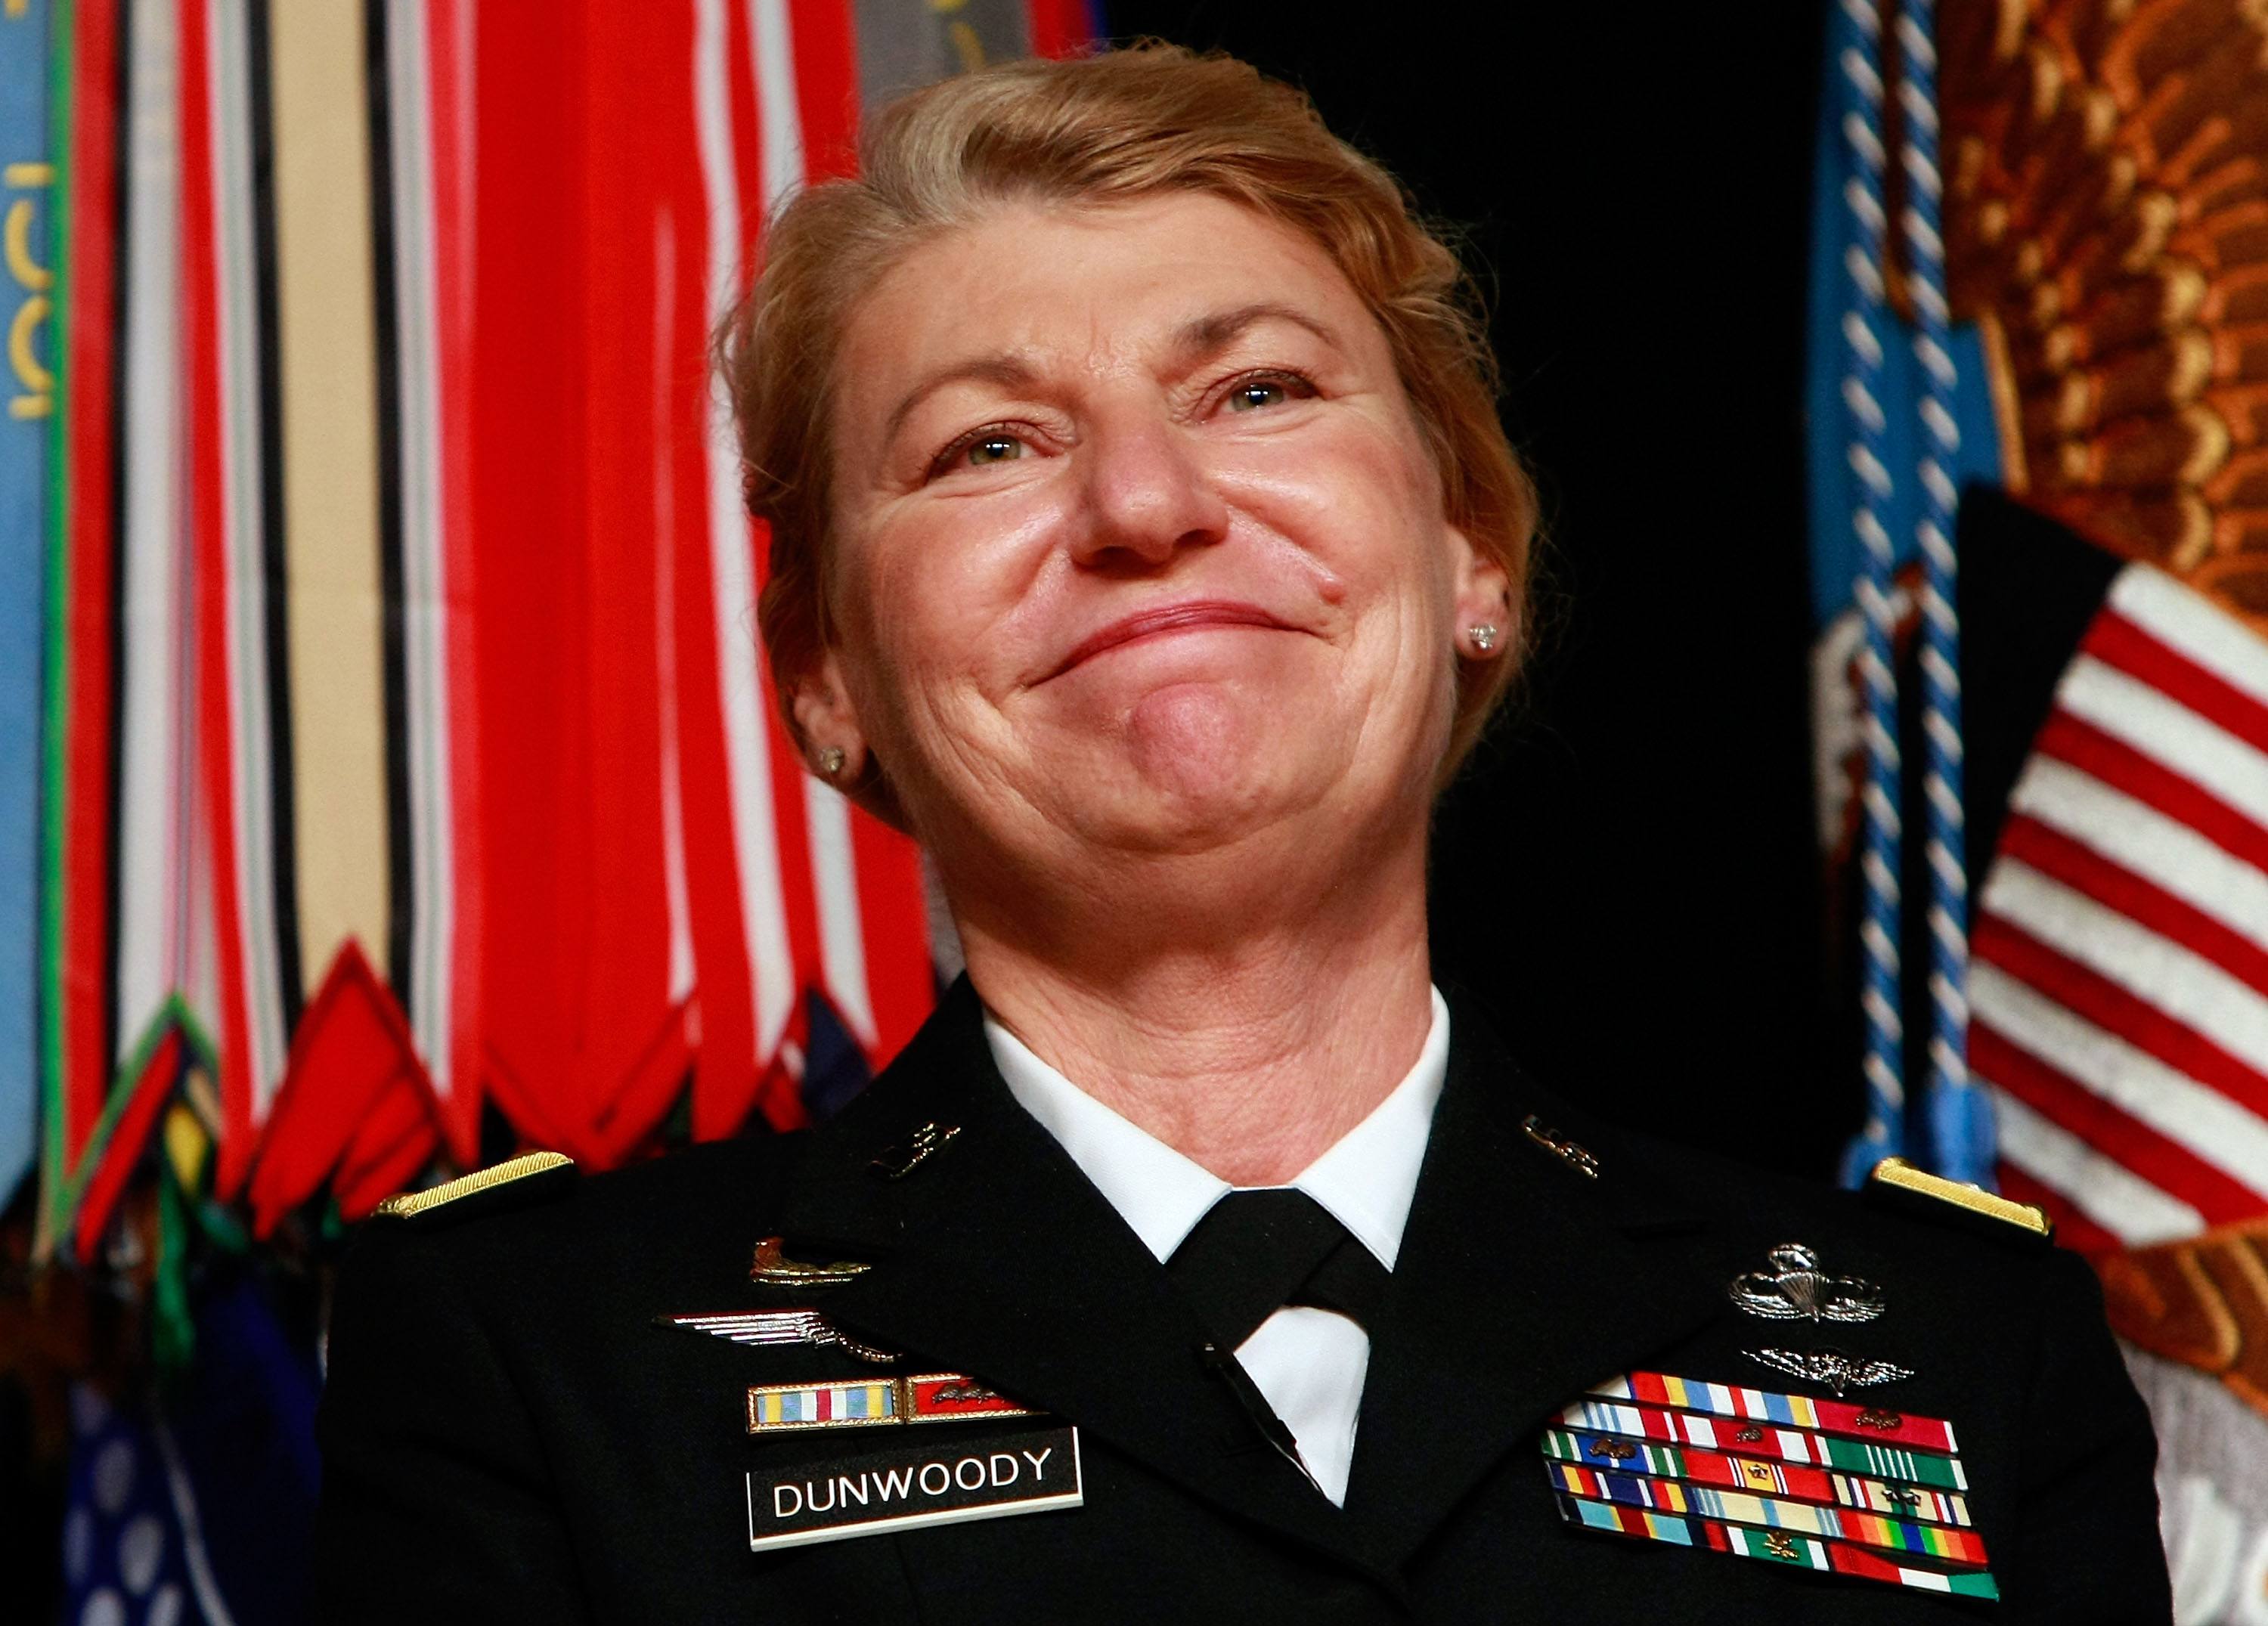 Ann. E. Dunwoody, famous American military veterans